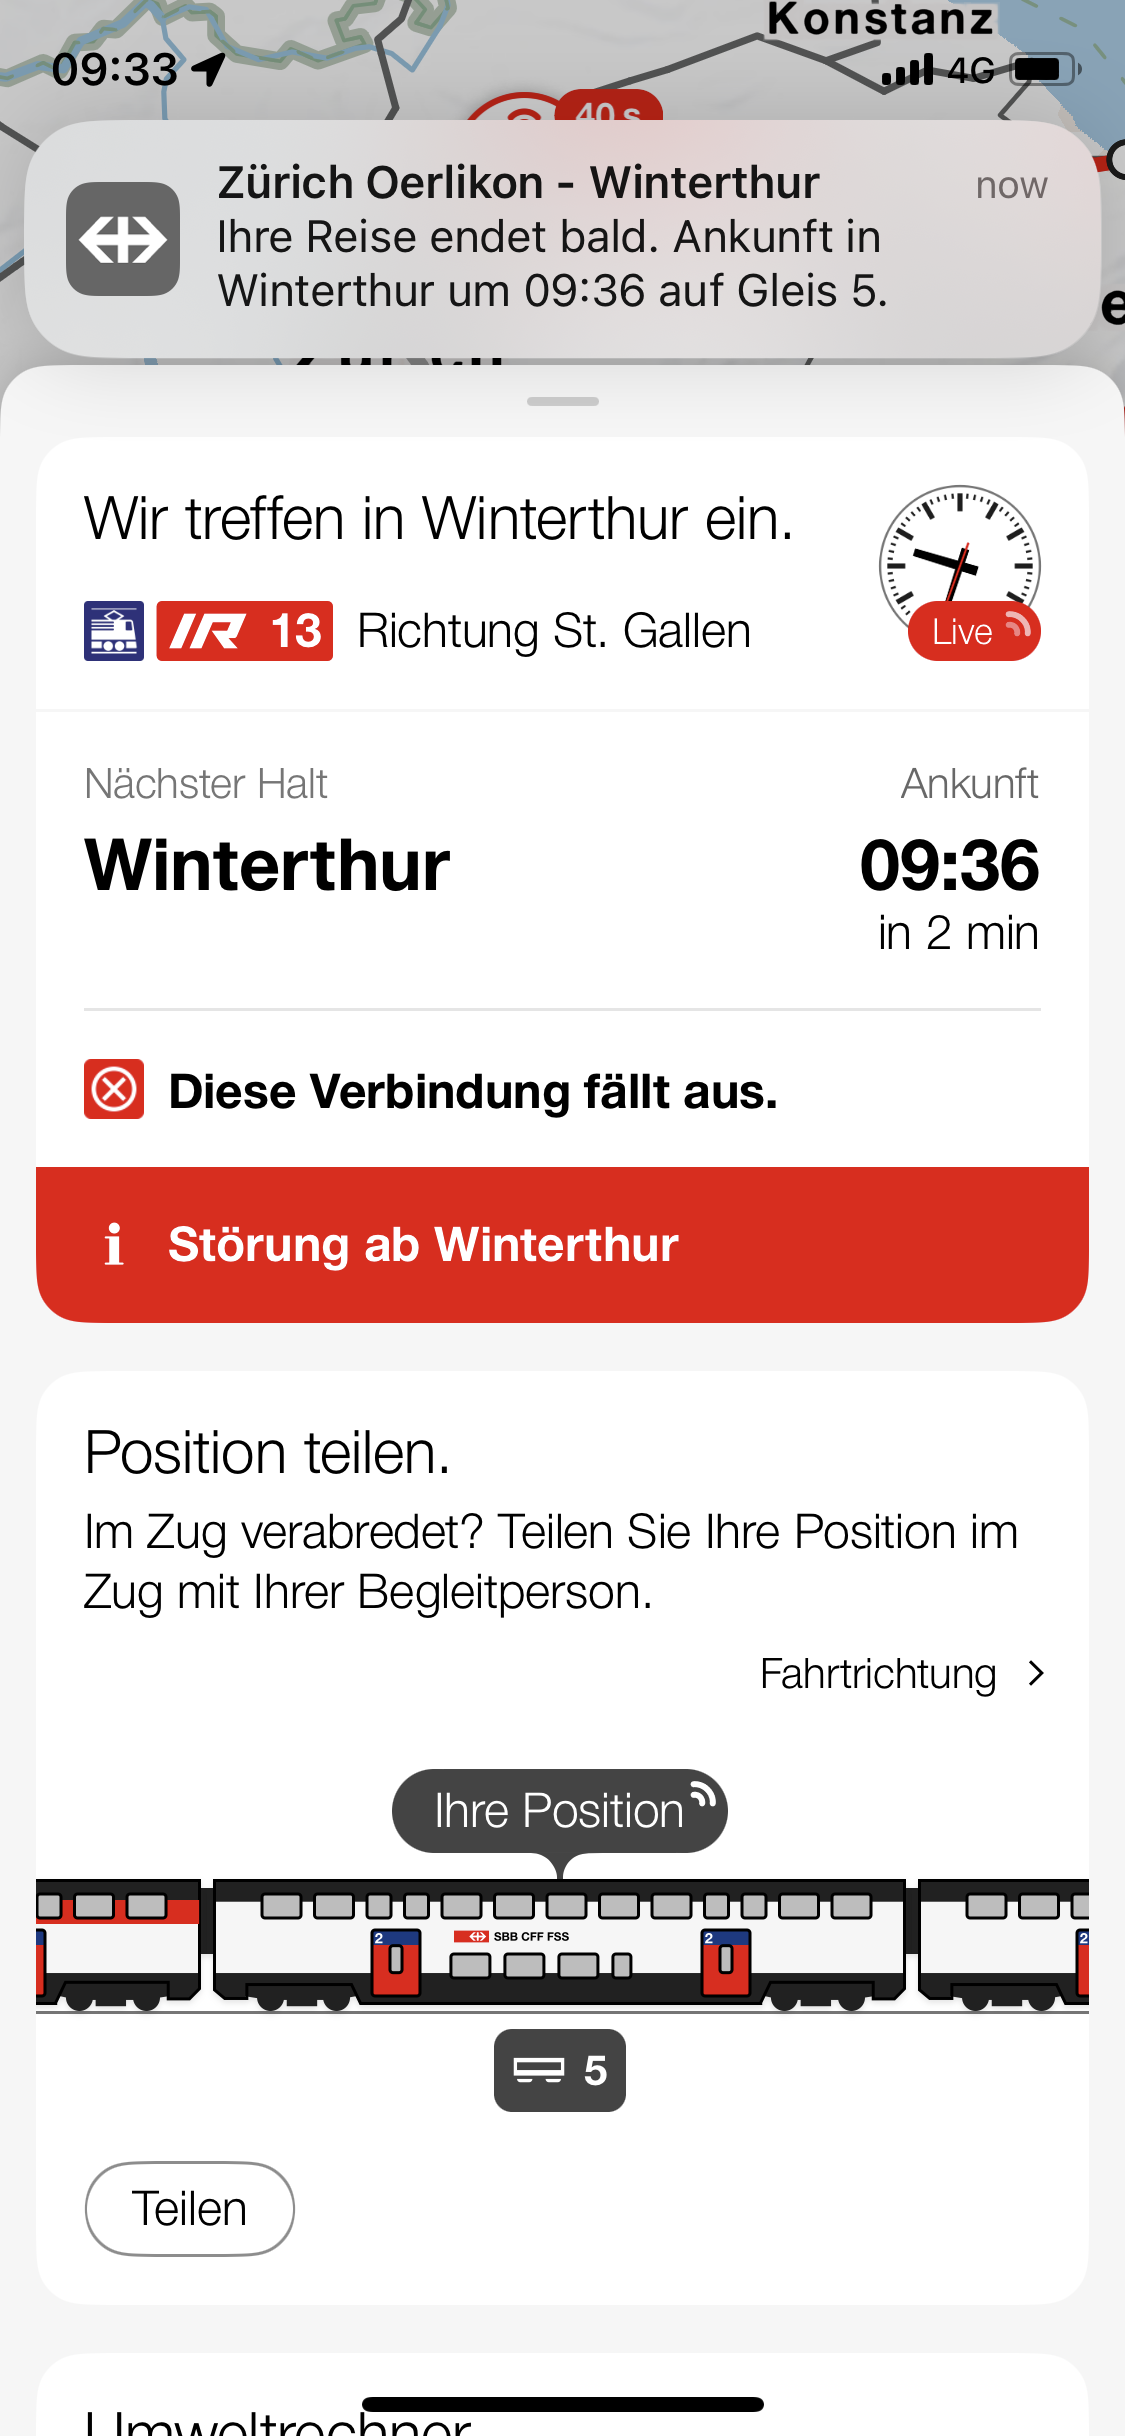 Fast in Winterthur.